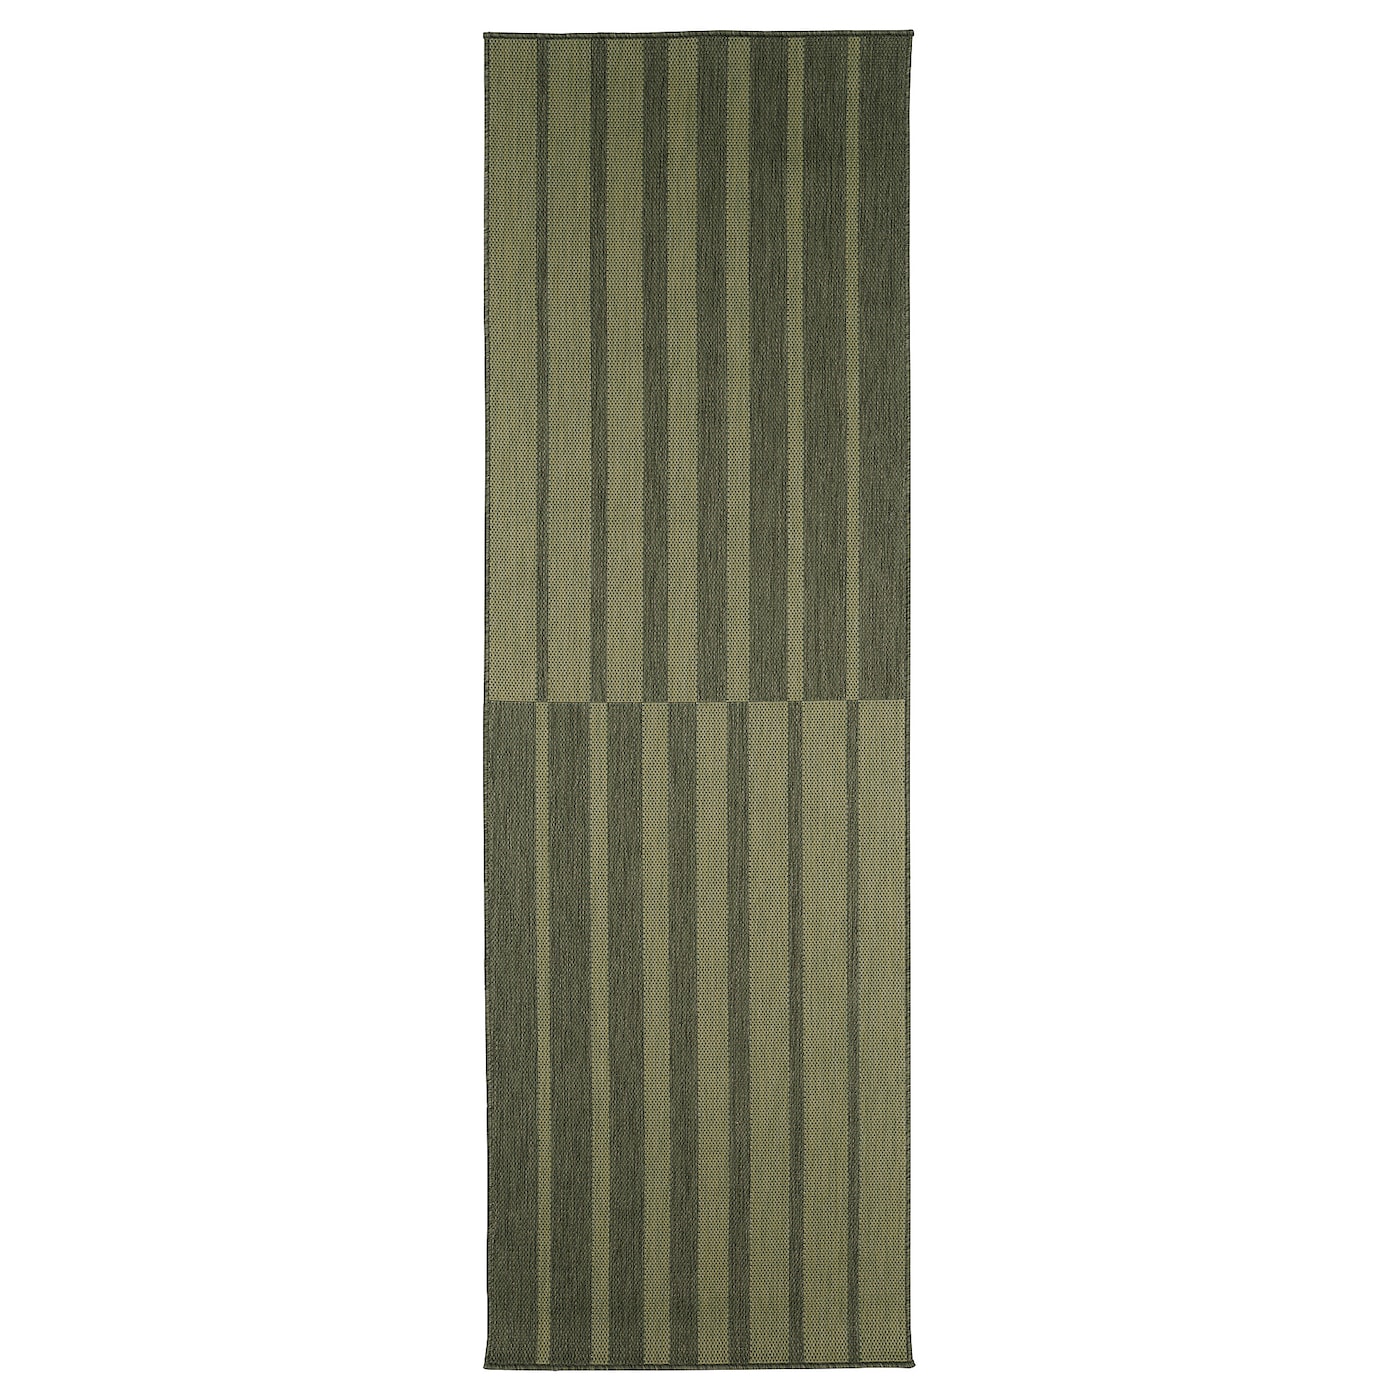 Текстильный ковер для дома и улицы - IKEA KANTSTOLPE/КАНТСТОЛП ИКЕА, 250х80 см, зеленый